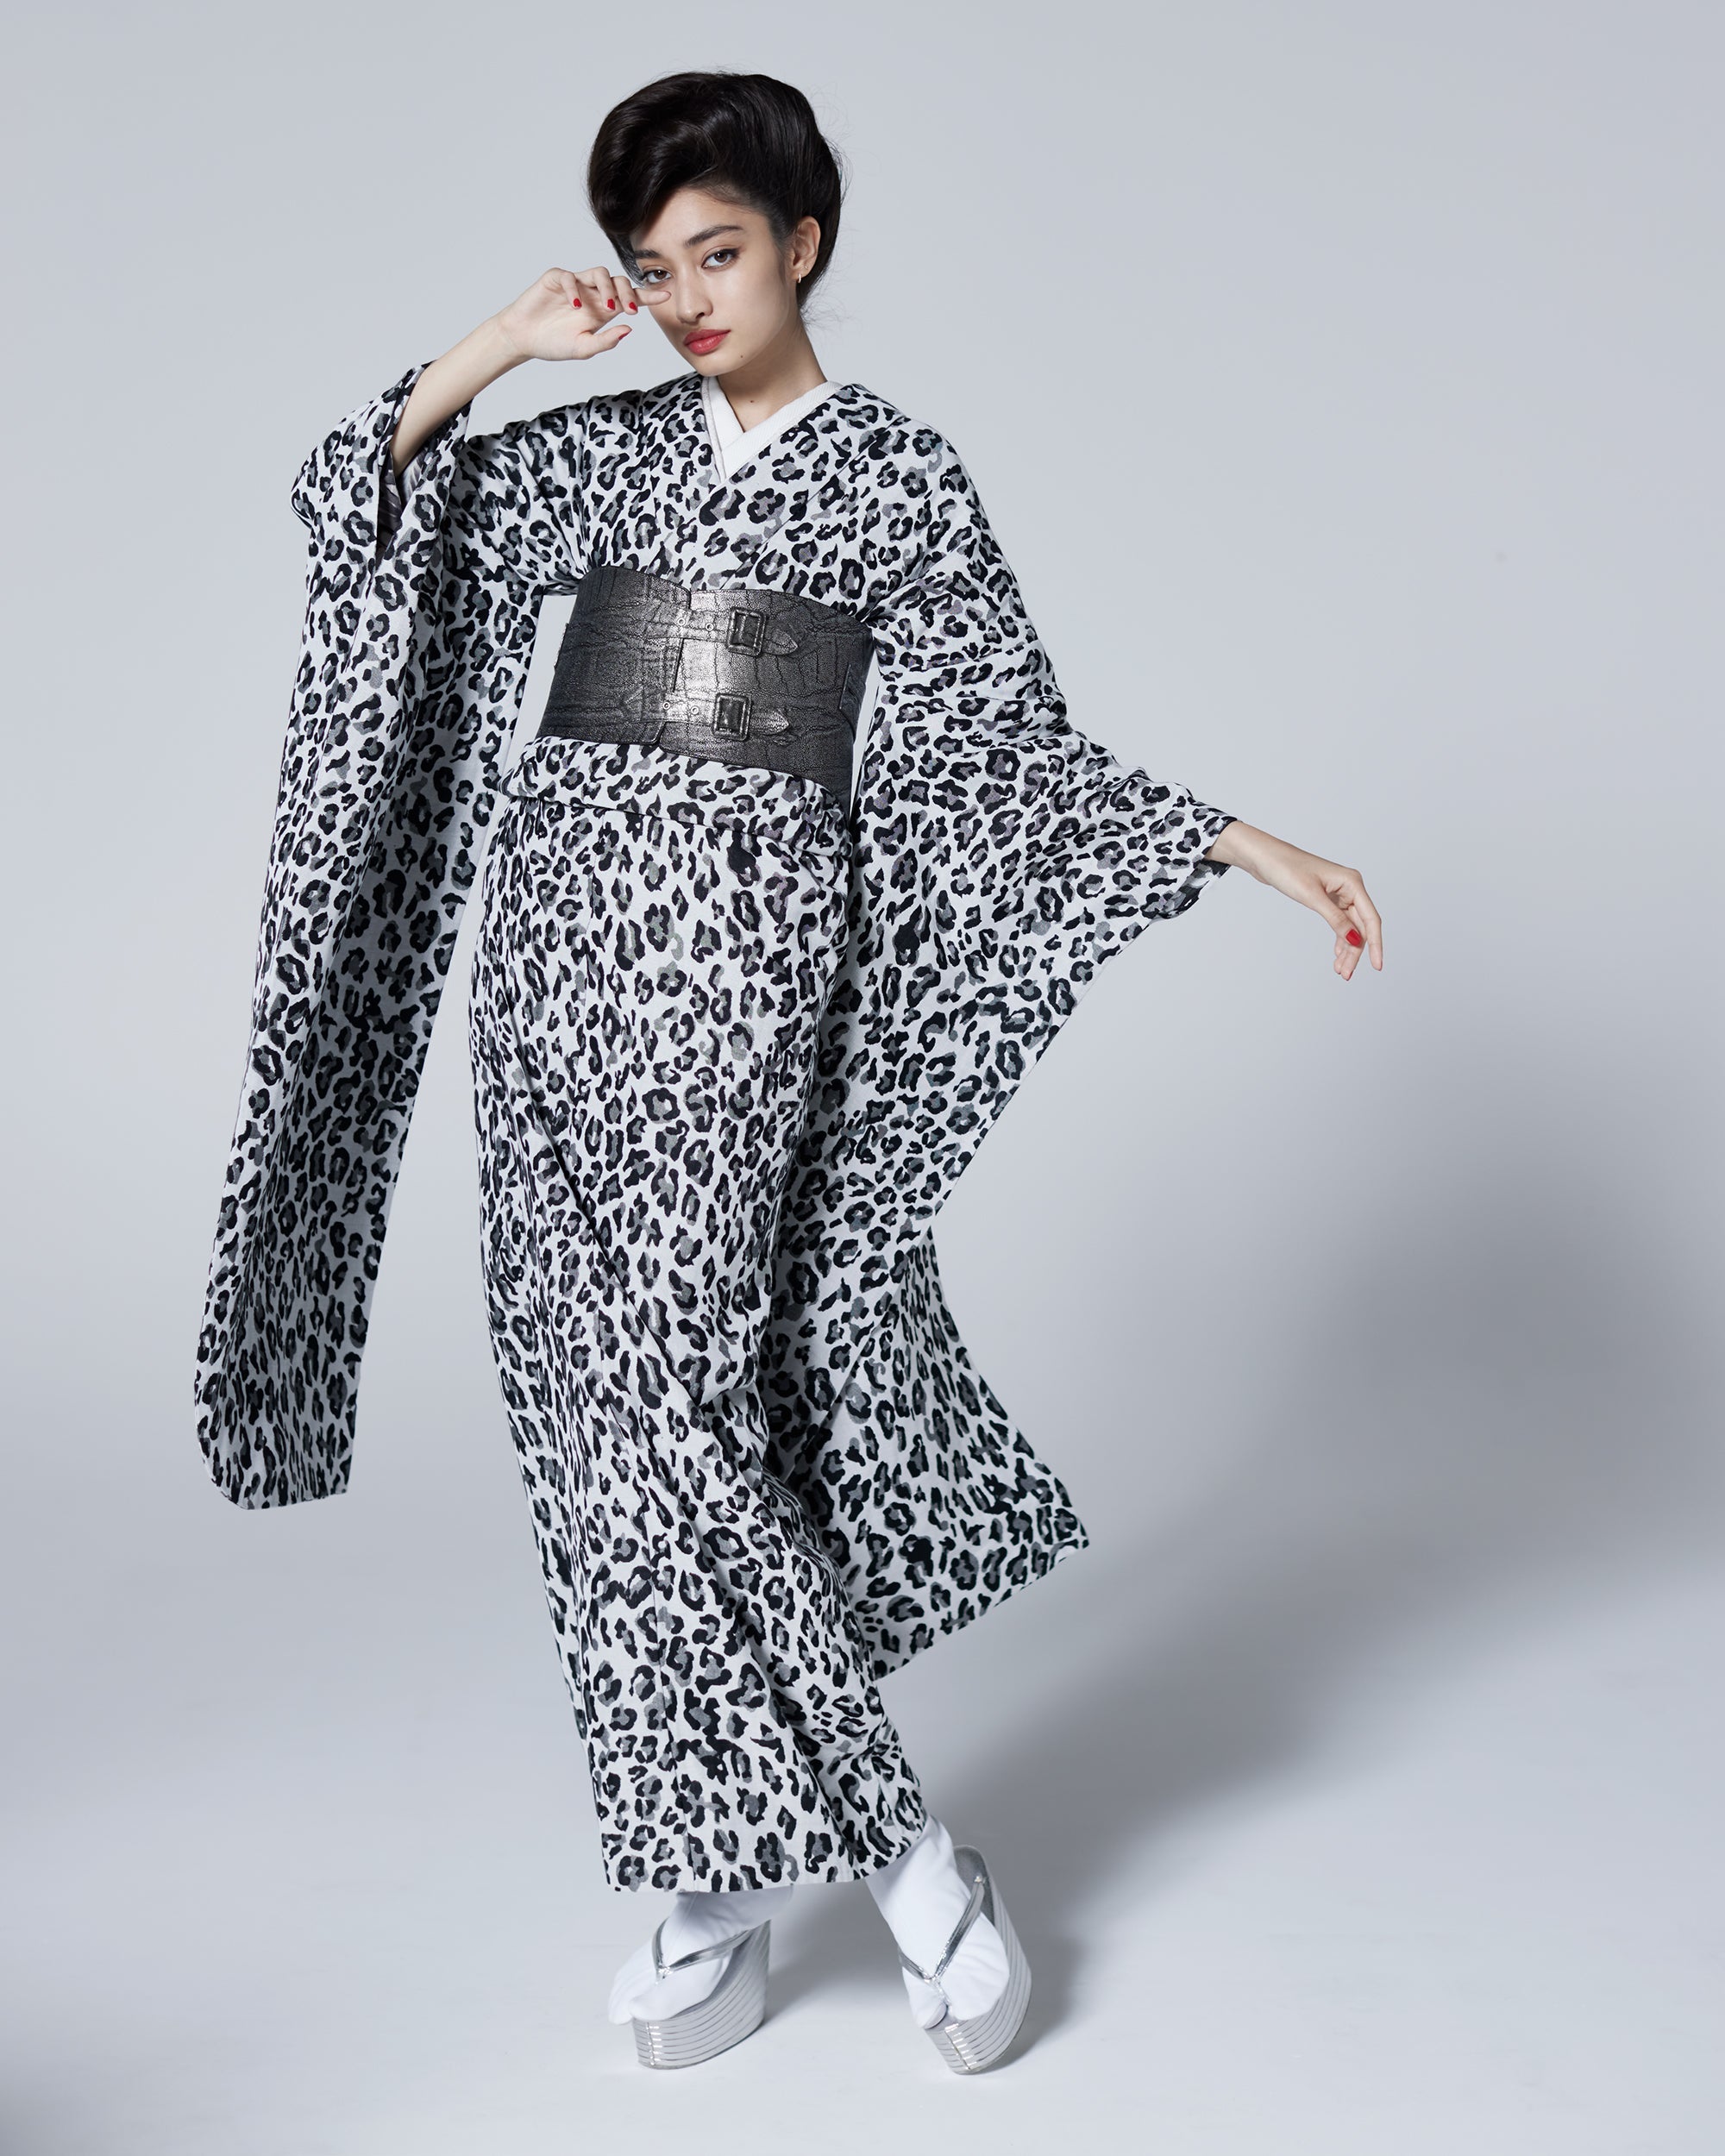 Fabric Yoneori Komon "Leopard Black and White" Cotton Yonezawa Ori